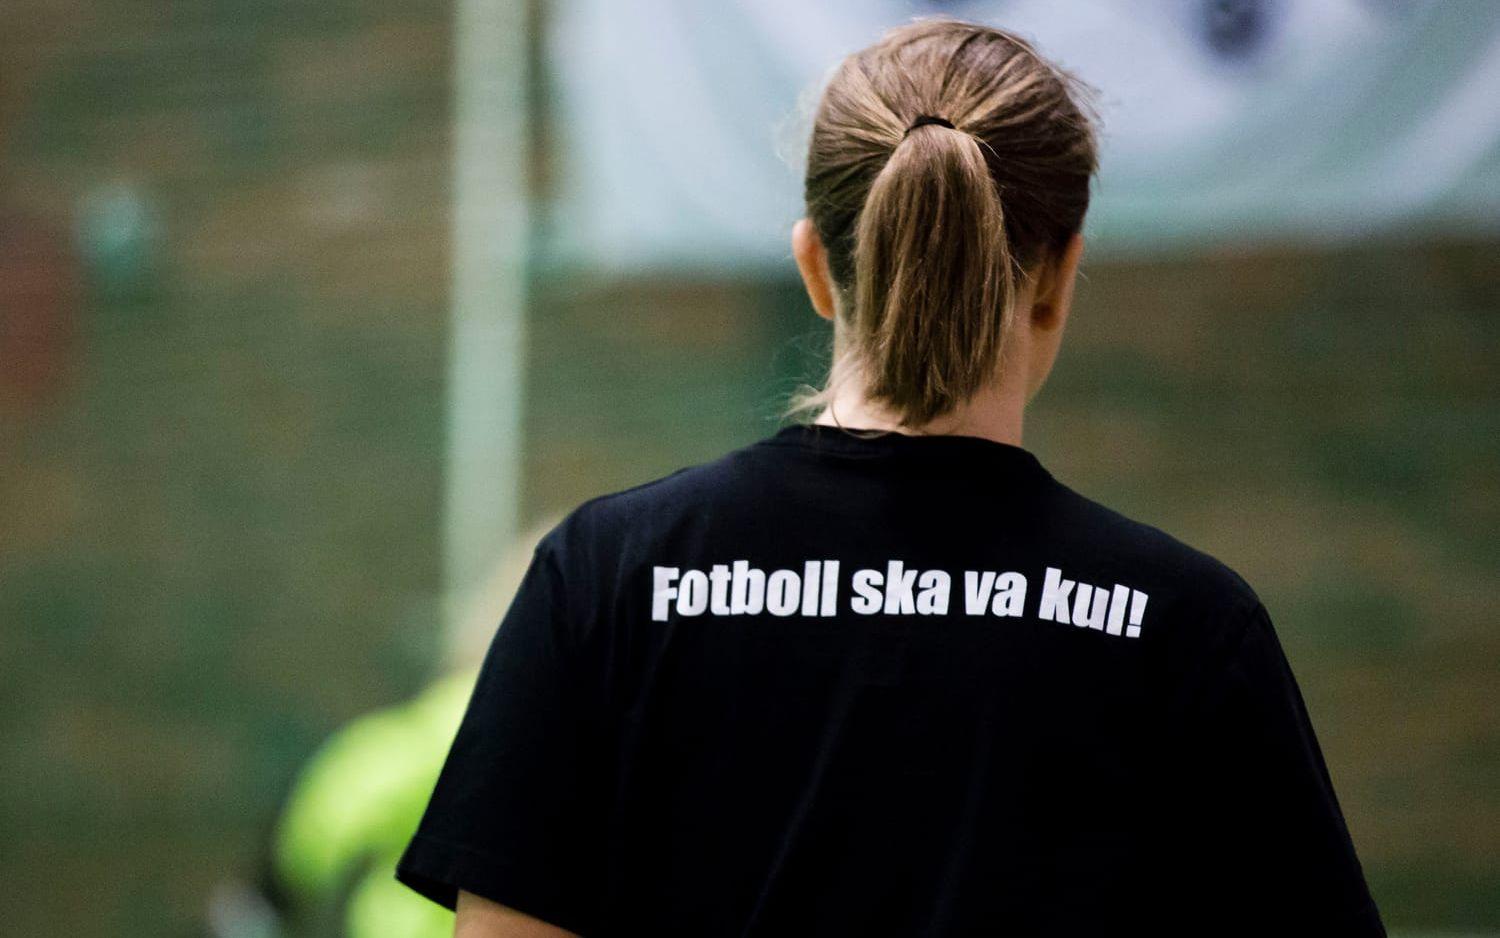 Ett bättre klimat för domare - om ungdomsfotbollen blir roligare och mindre resultatorienterad igen, tror Nicklas Bengtsson. Bildbyrån.